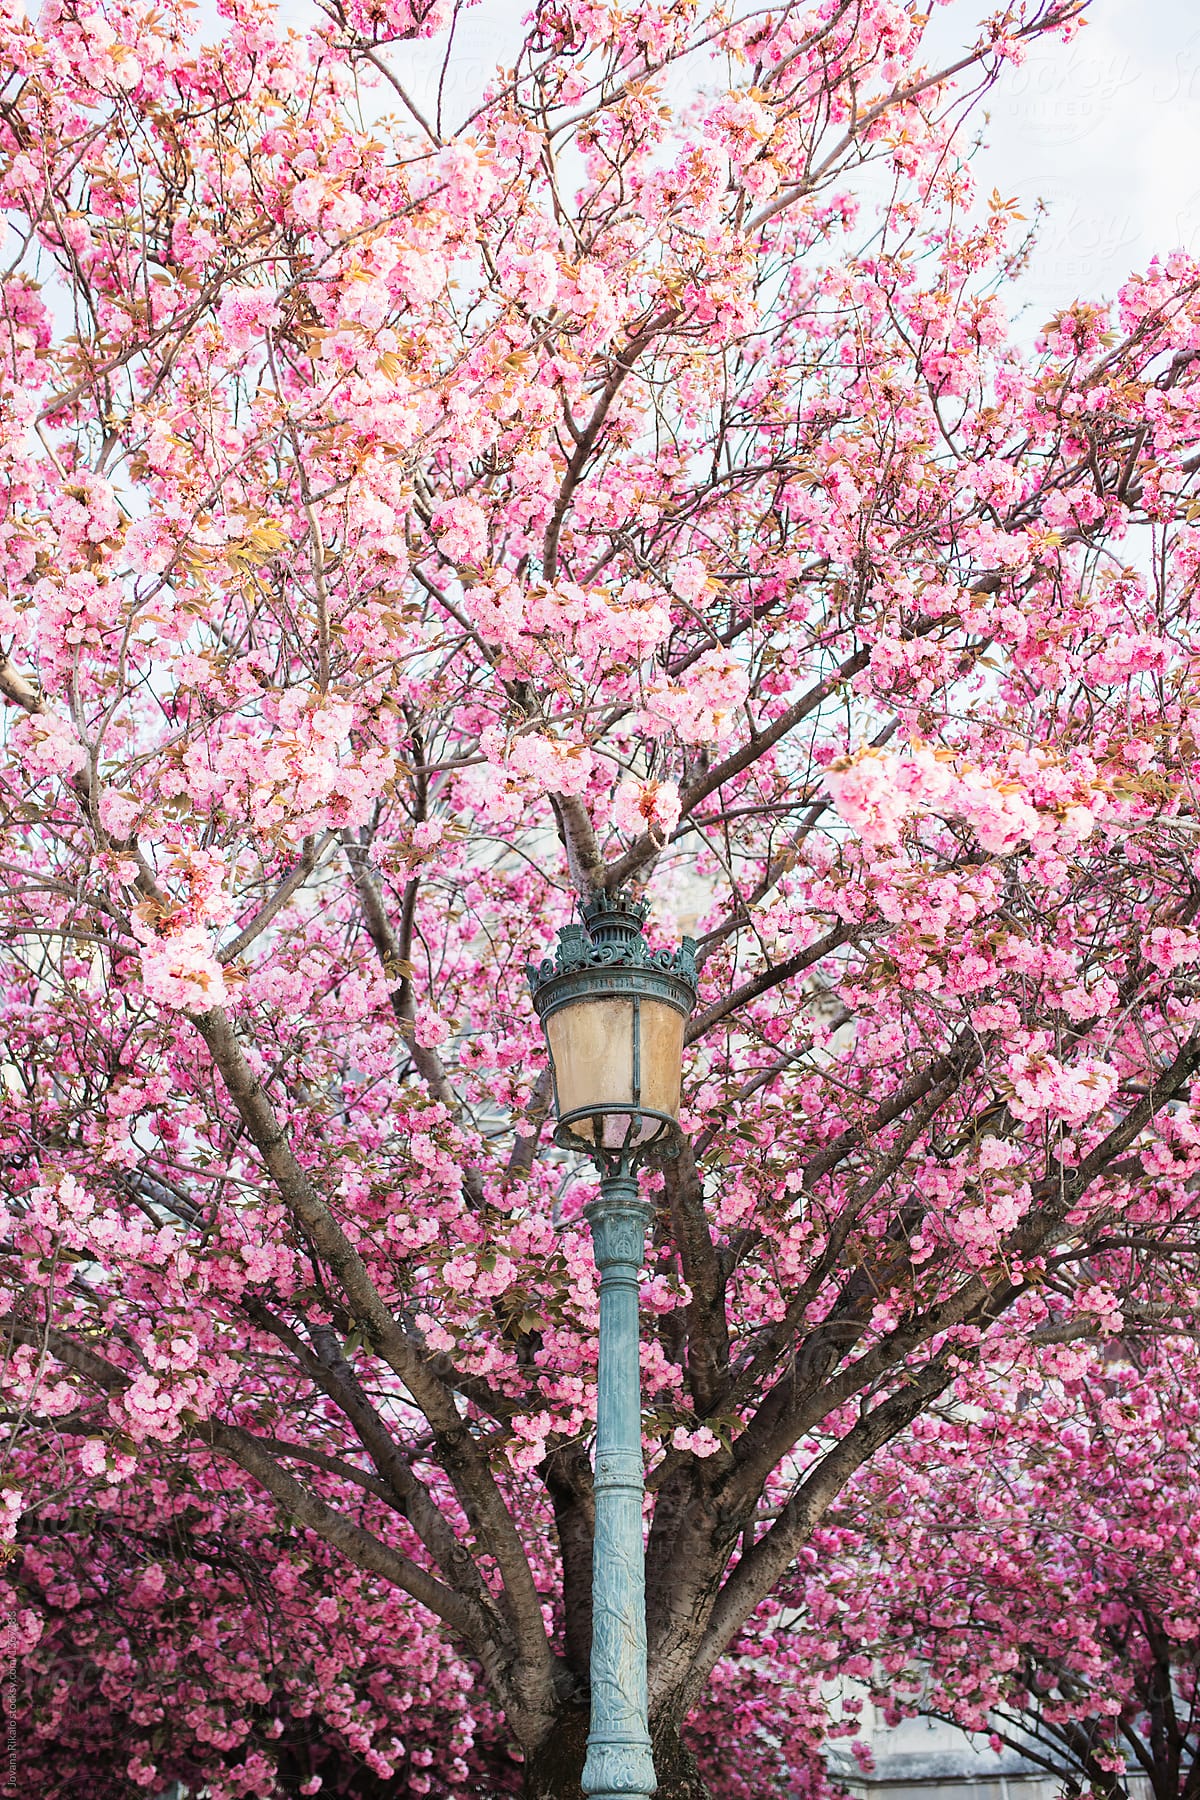 Lamp against cherry tree in Paris